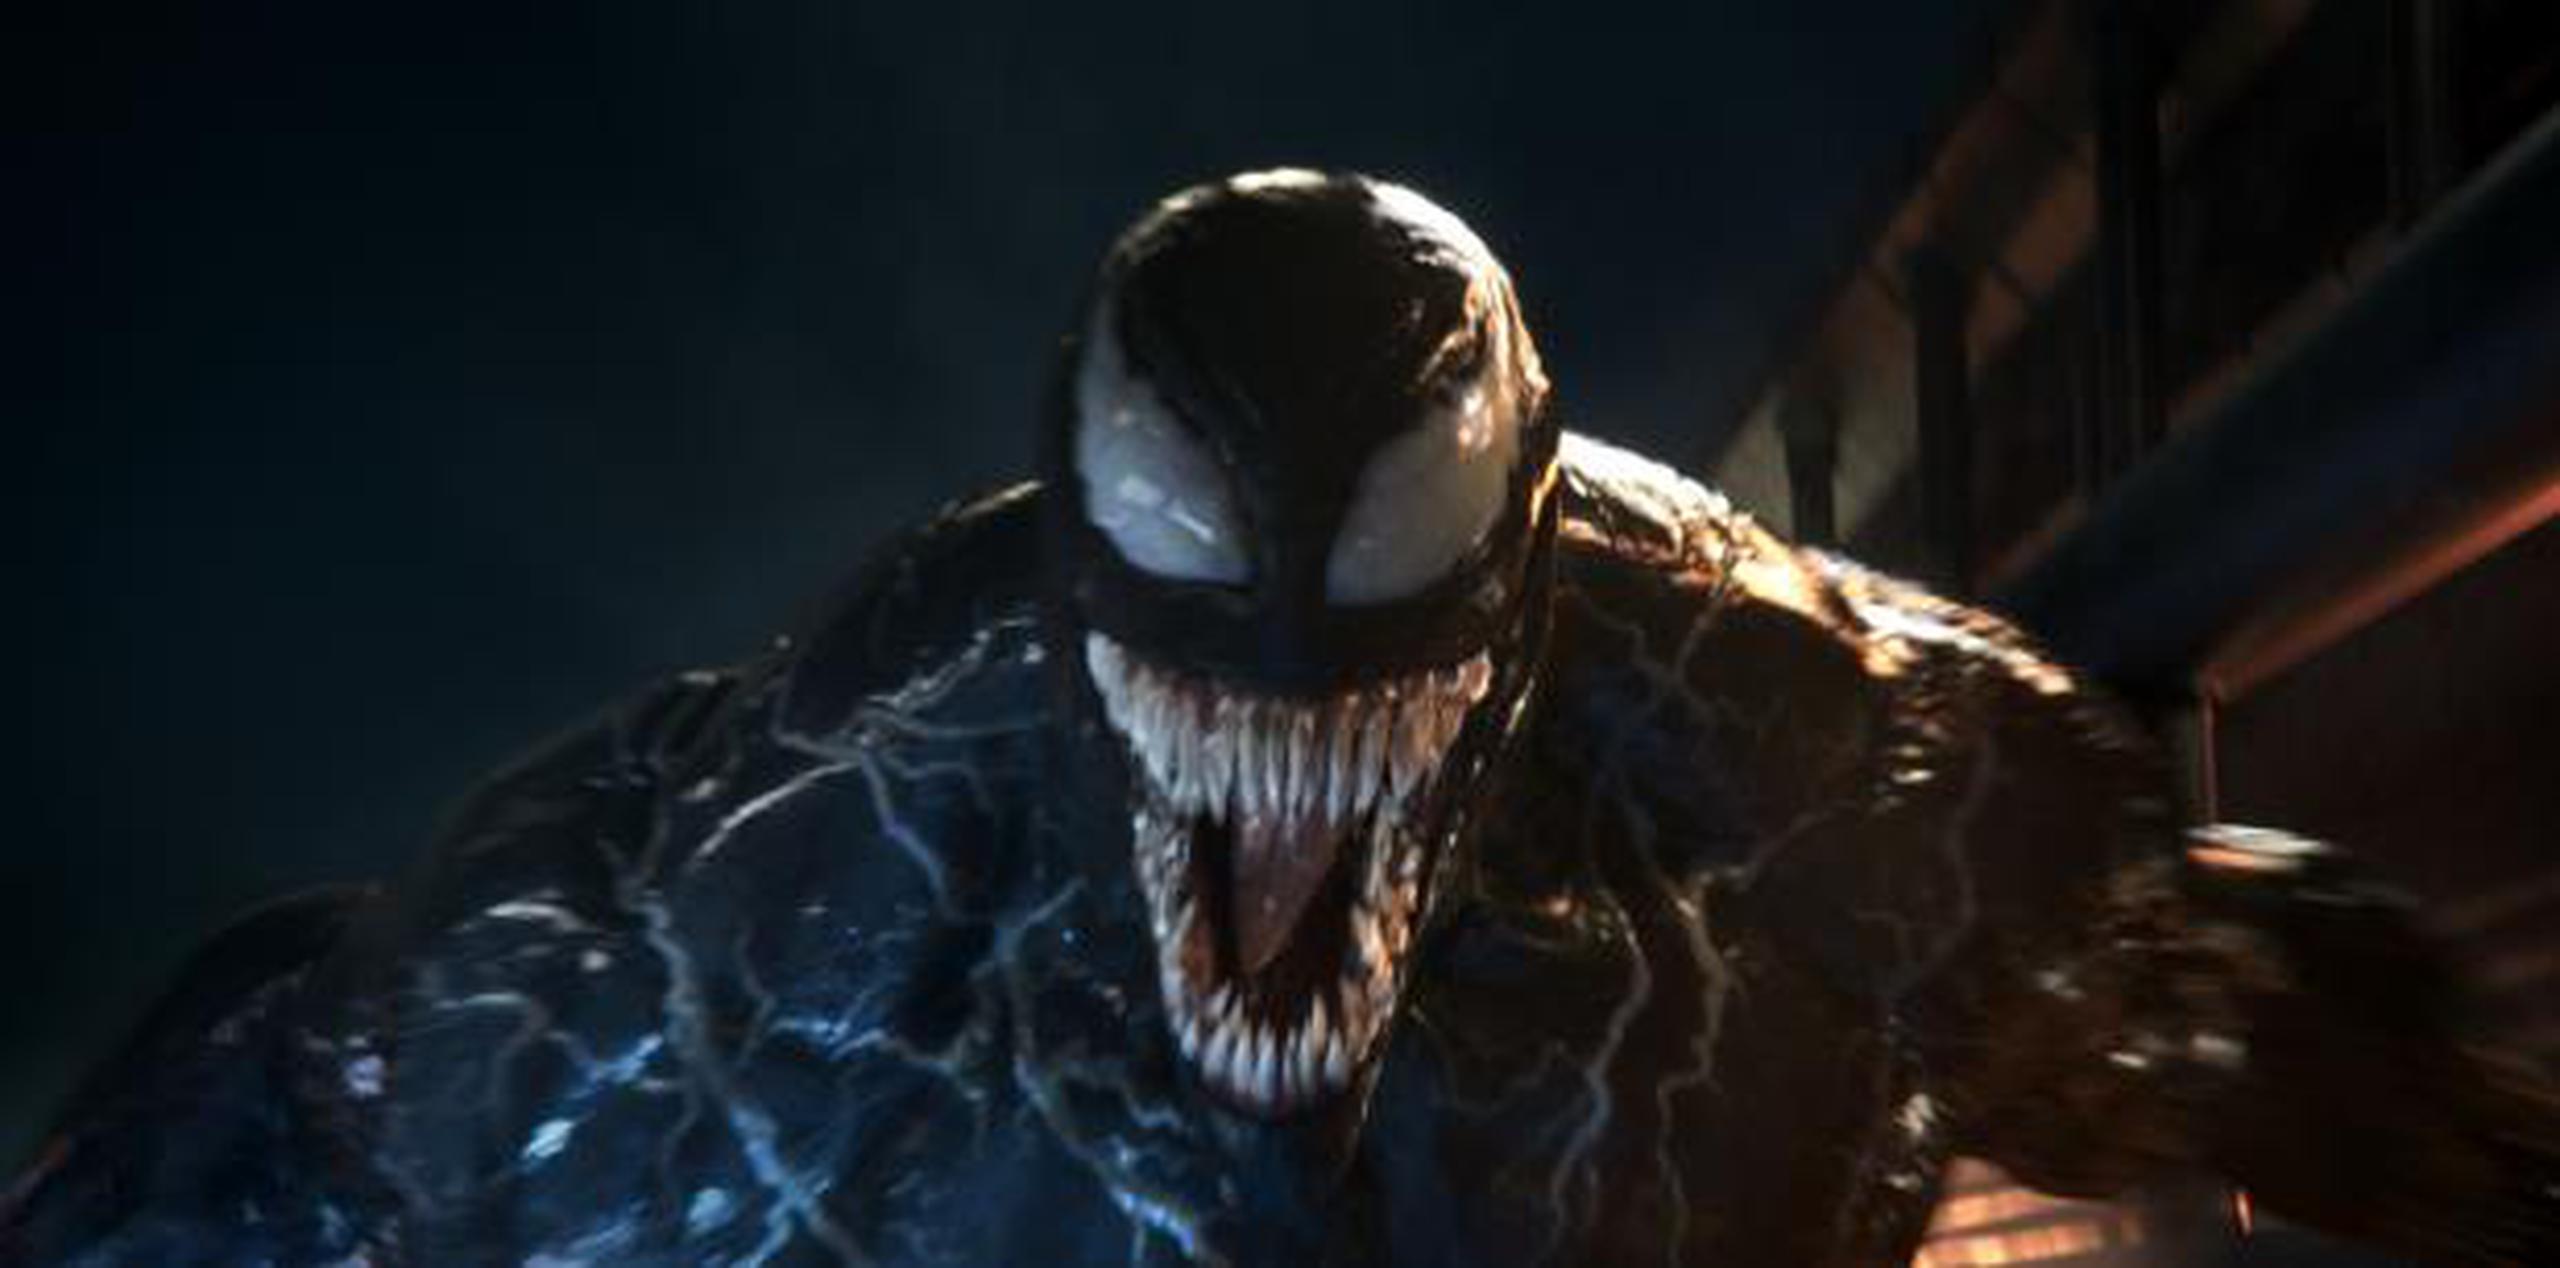 La crítica destrozó a "Venom".